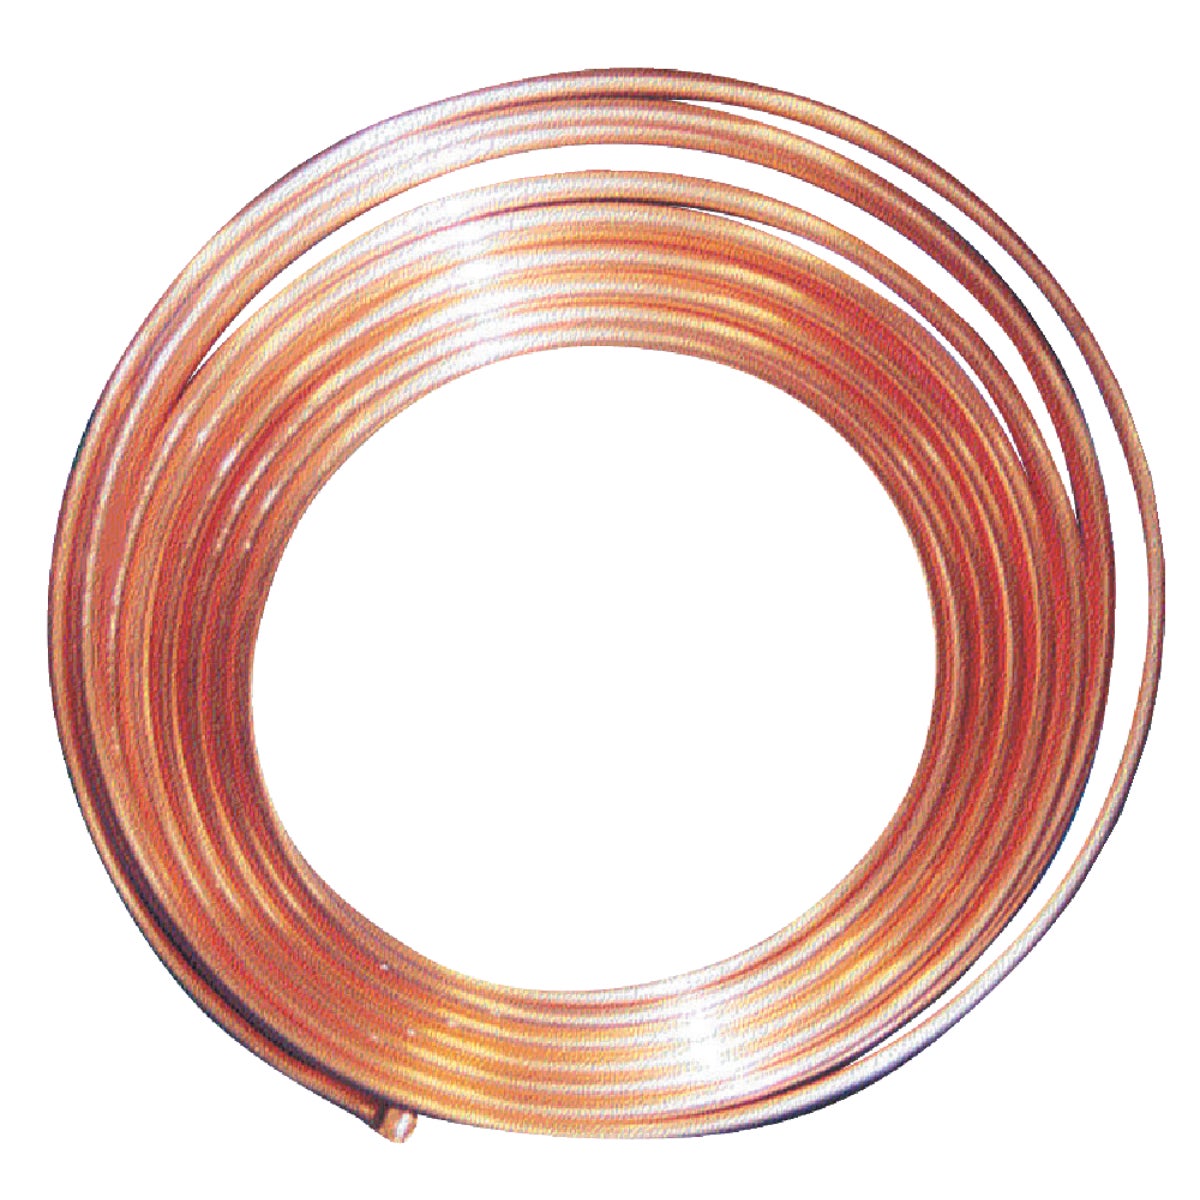 Item 416605, Type L copper tubing.